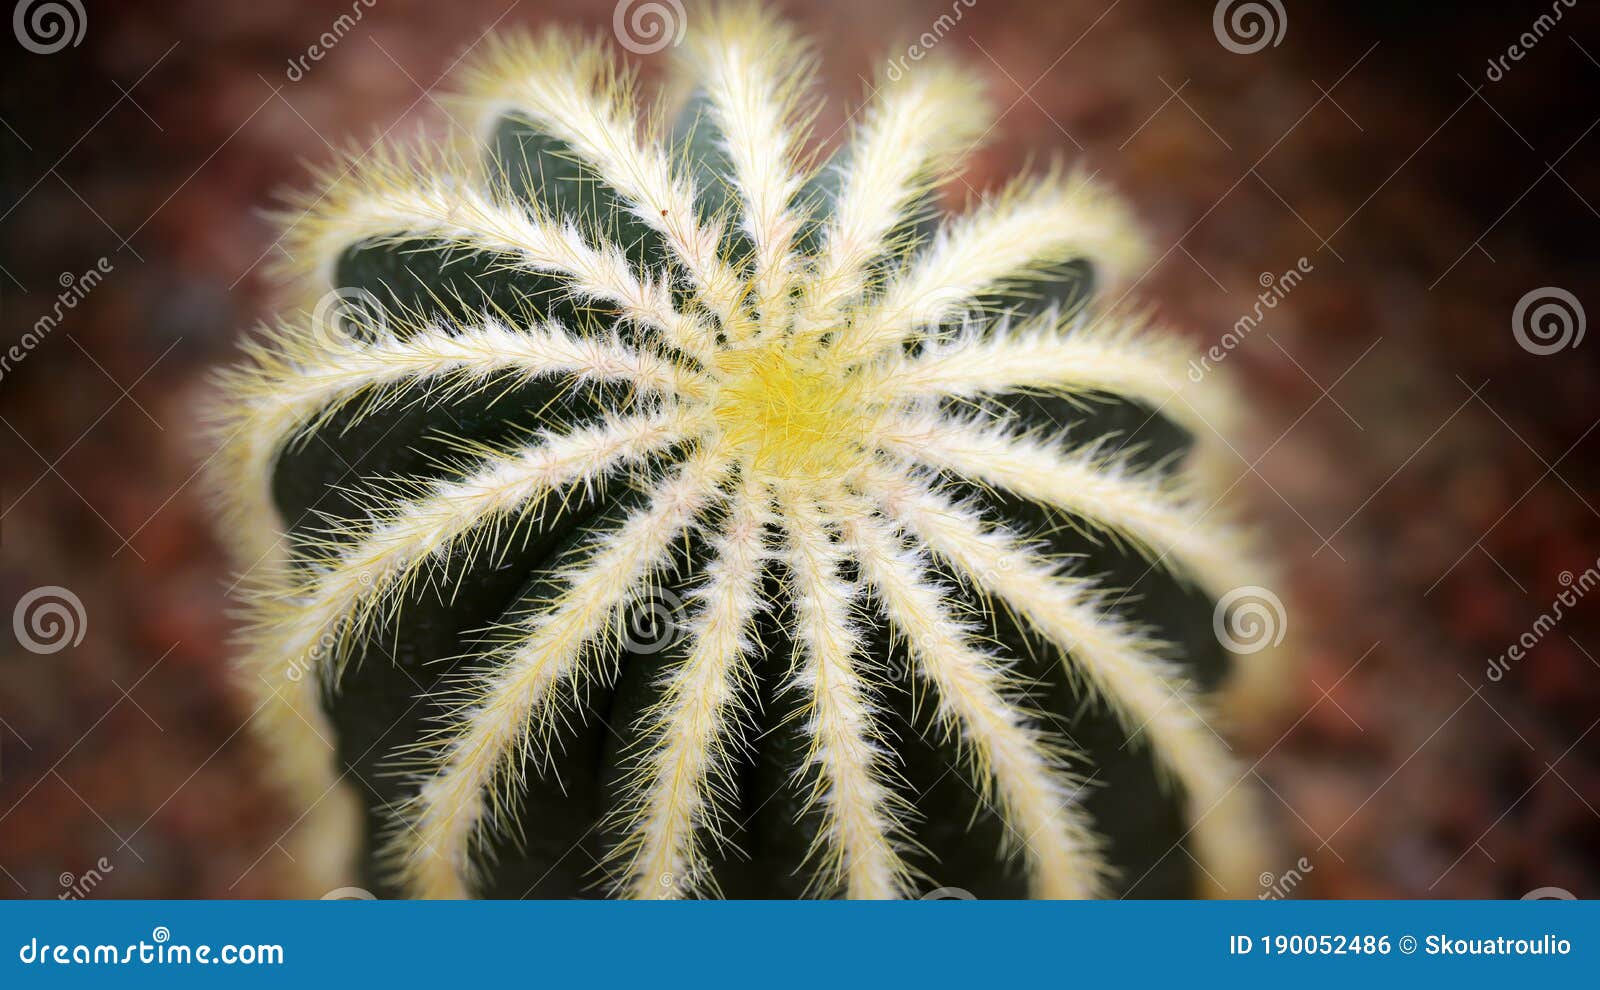 spherical cactus in a tropical botanical garden in bangkok, thailand, macro photography. 